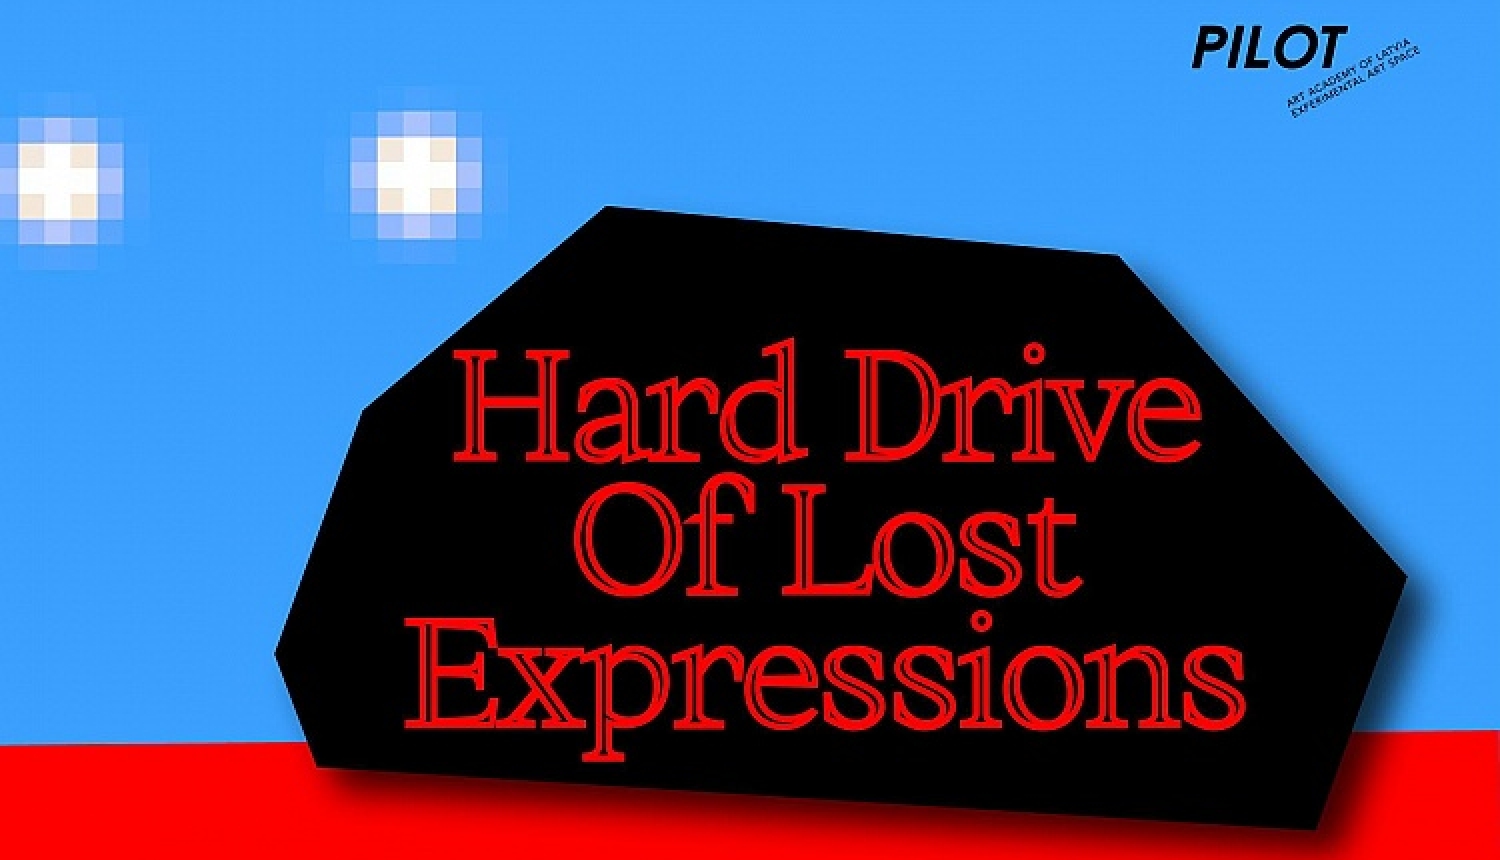 LMA eksperimentālajā mākslas telpā "Pilot" atklās izstādi “Hard Drive Of Lost Expressions’’